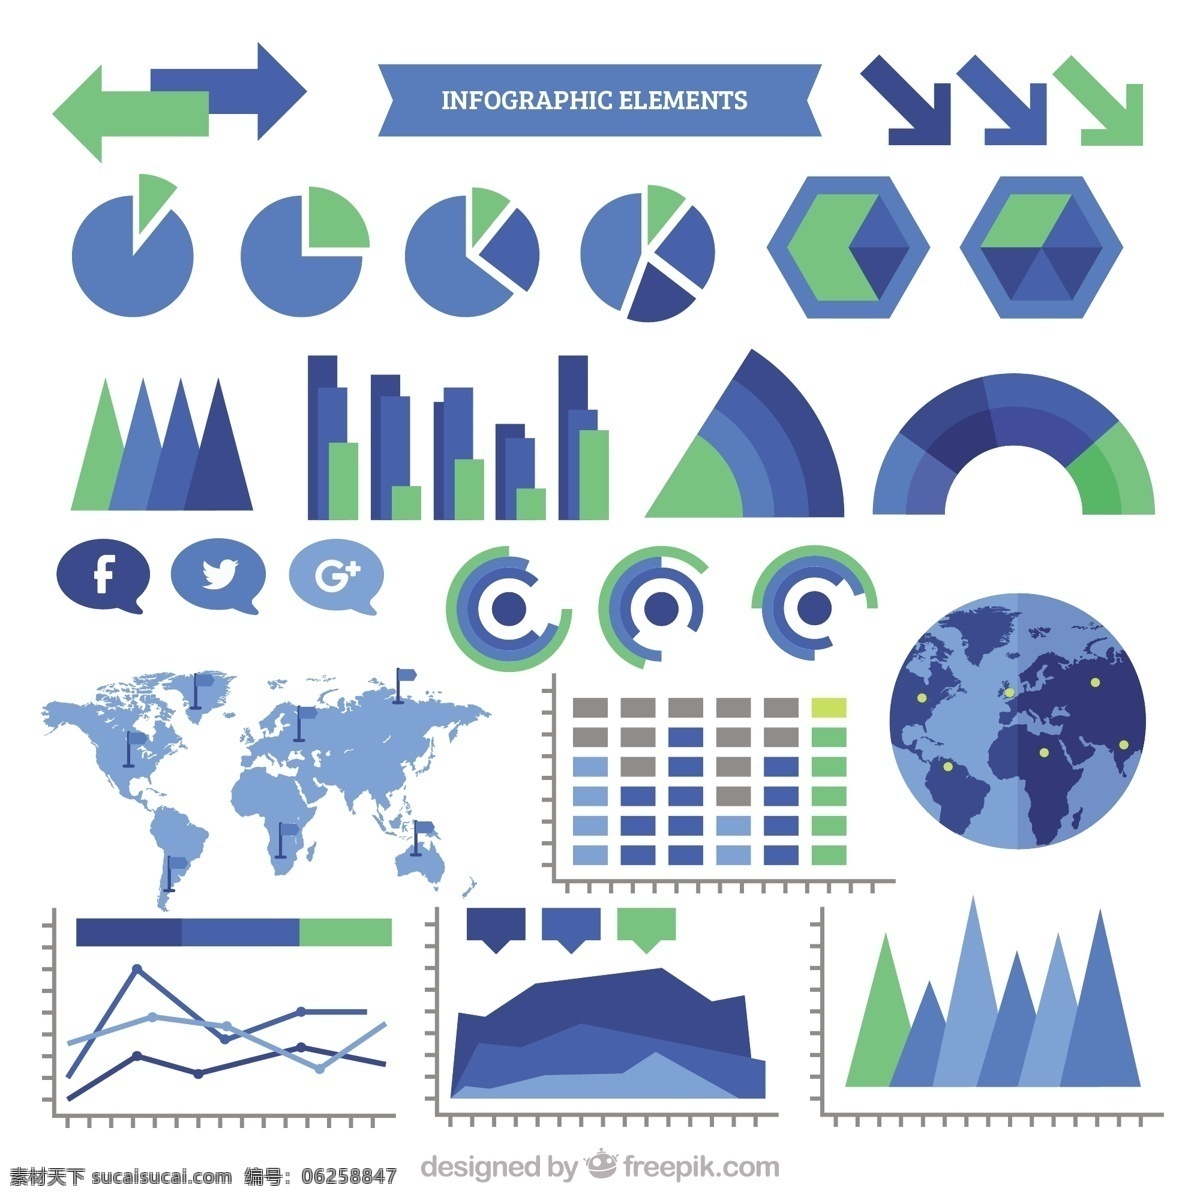 蓝色 绿色 图表 元素 业务 模板 图形 扁平 营销过程 信息图表模板 数据元素 信息 平面设计 商业图表